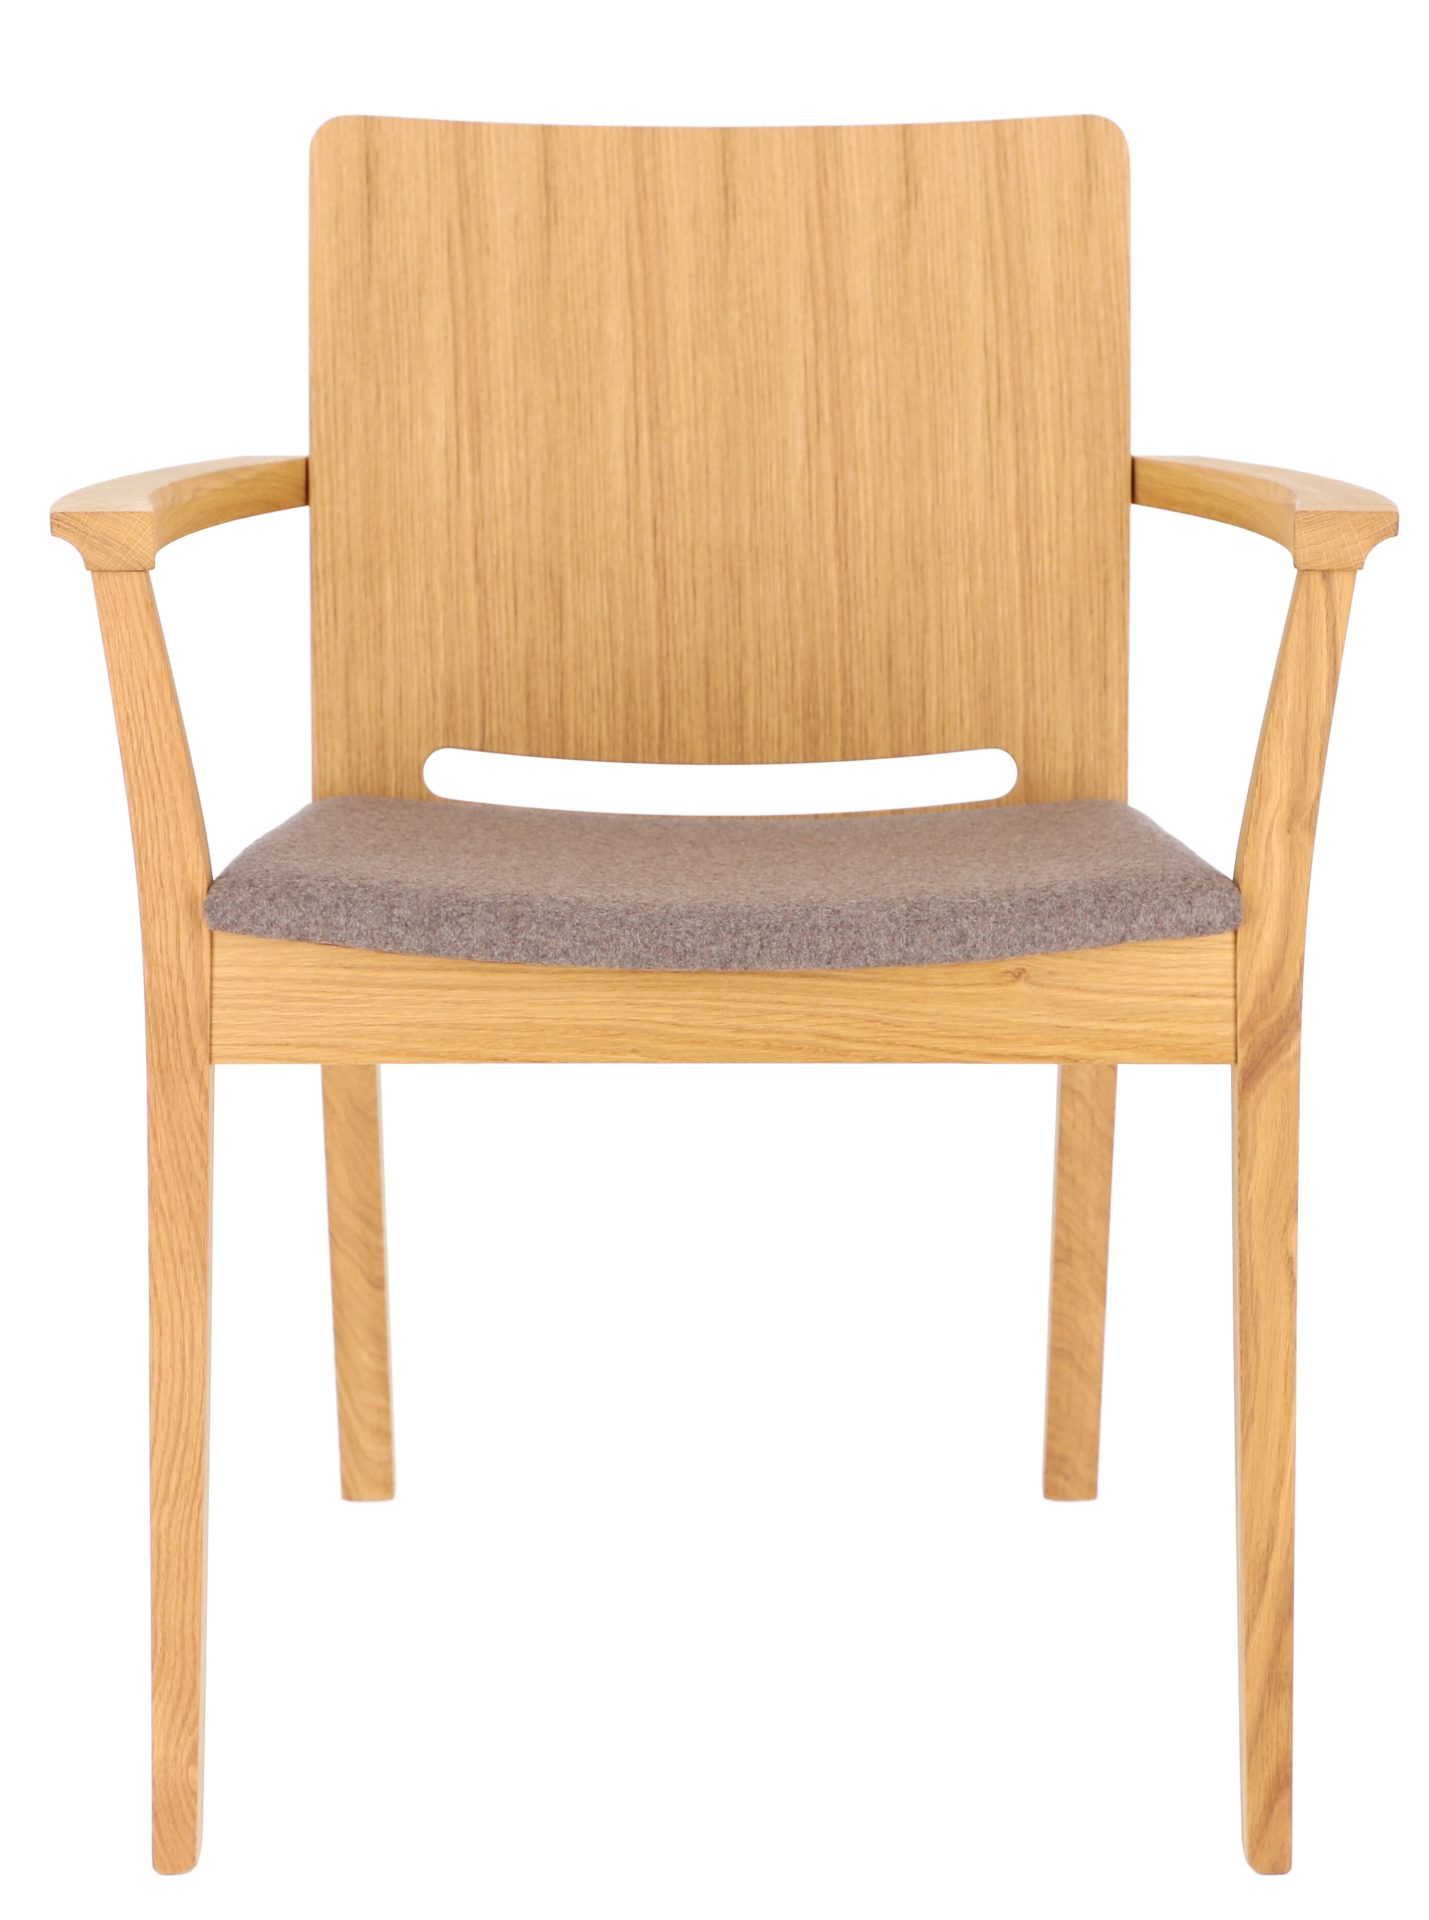 Der Esszimmerstuhl Kelley wurde aus massiver Eiche gefertigt, die Sitzfläche wurde aus Wolle hergestellt. Durch die Armlehnen wird der Tisch nur noch bequemer. Designet wurde der Tisch von der Marke Jan Kurtz.